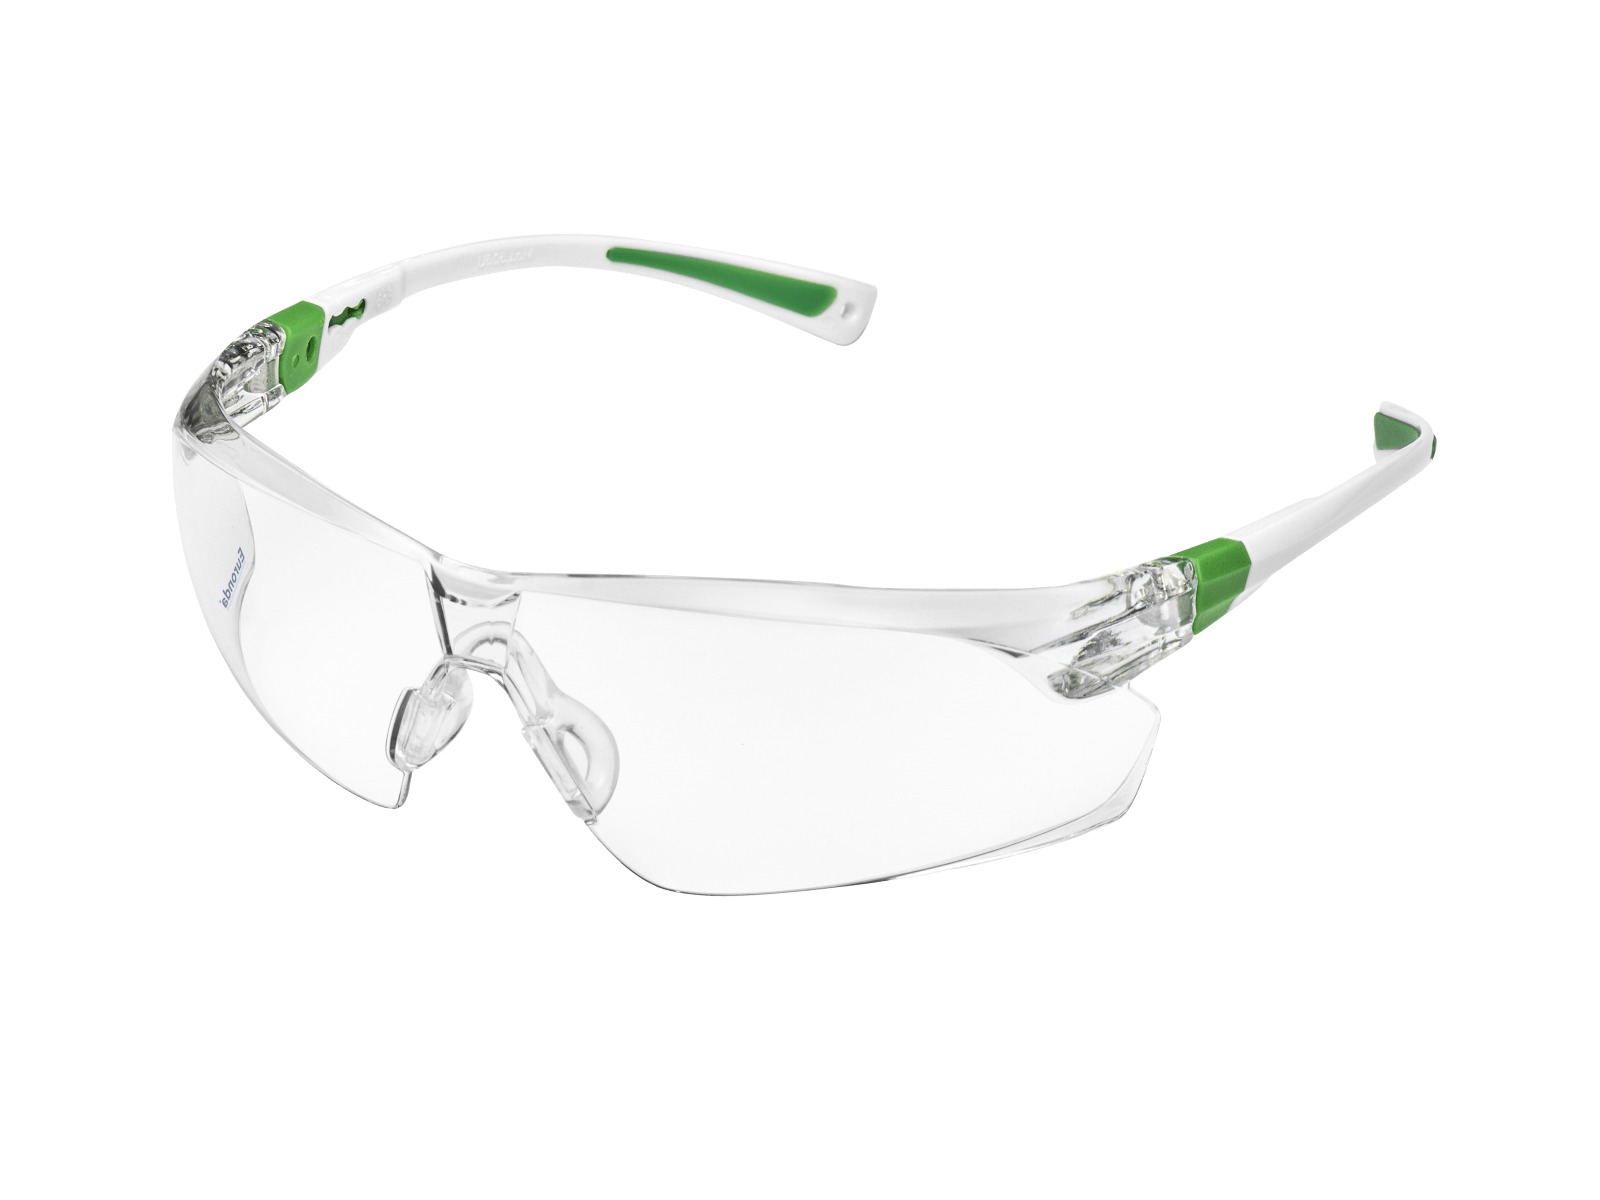 Leichte Schutzbrille FitUp grün - verstellbar